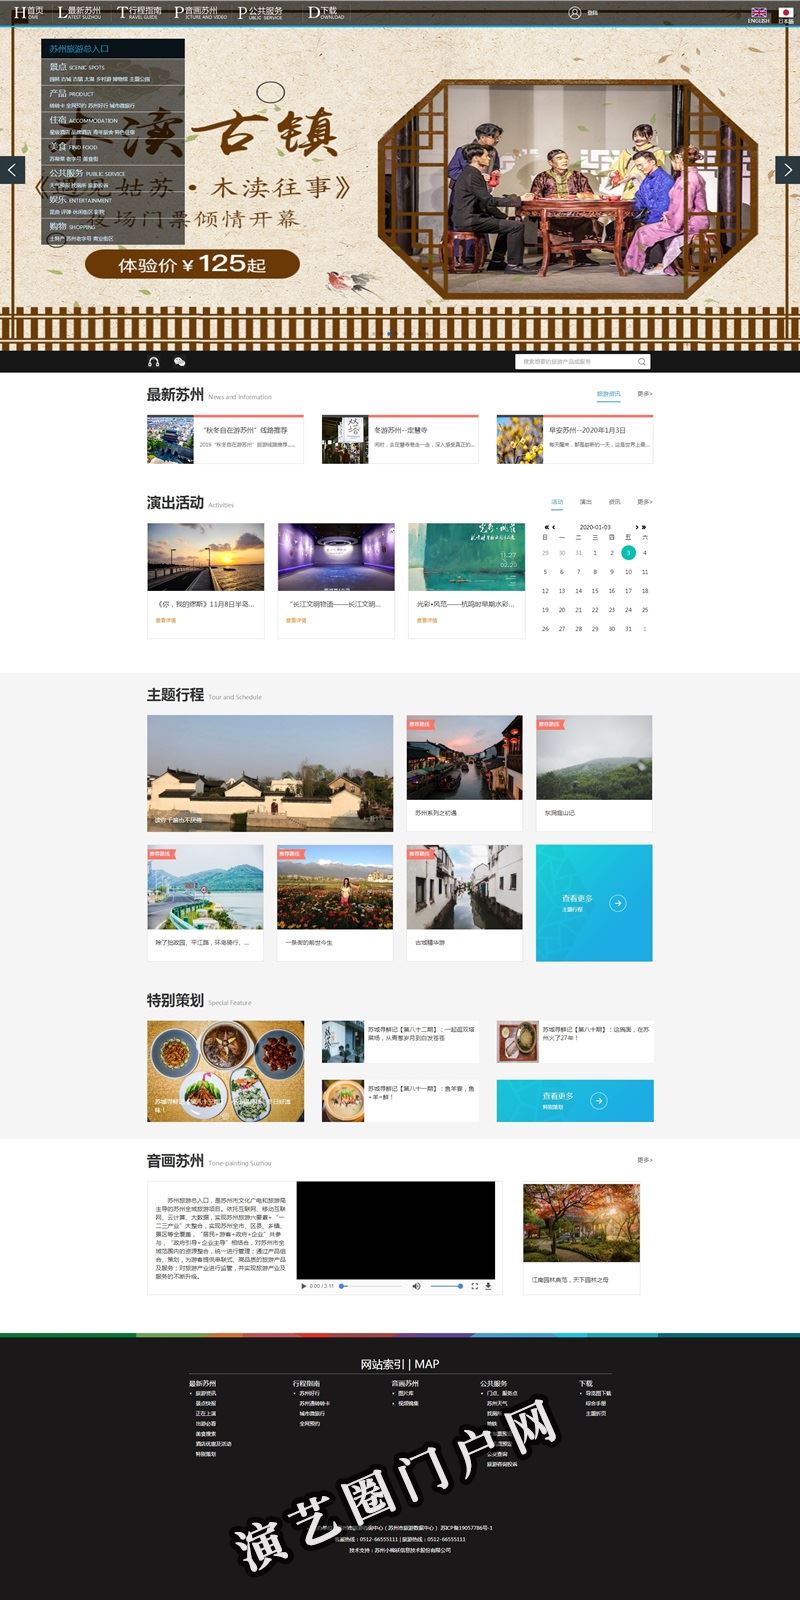 苏州旅游资讯网 苏州市文化广电和旅游局官方网站截图